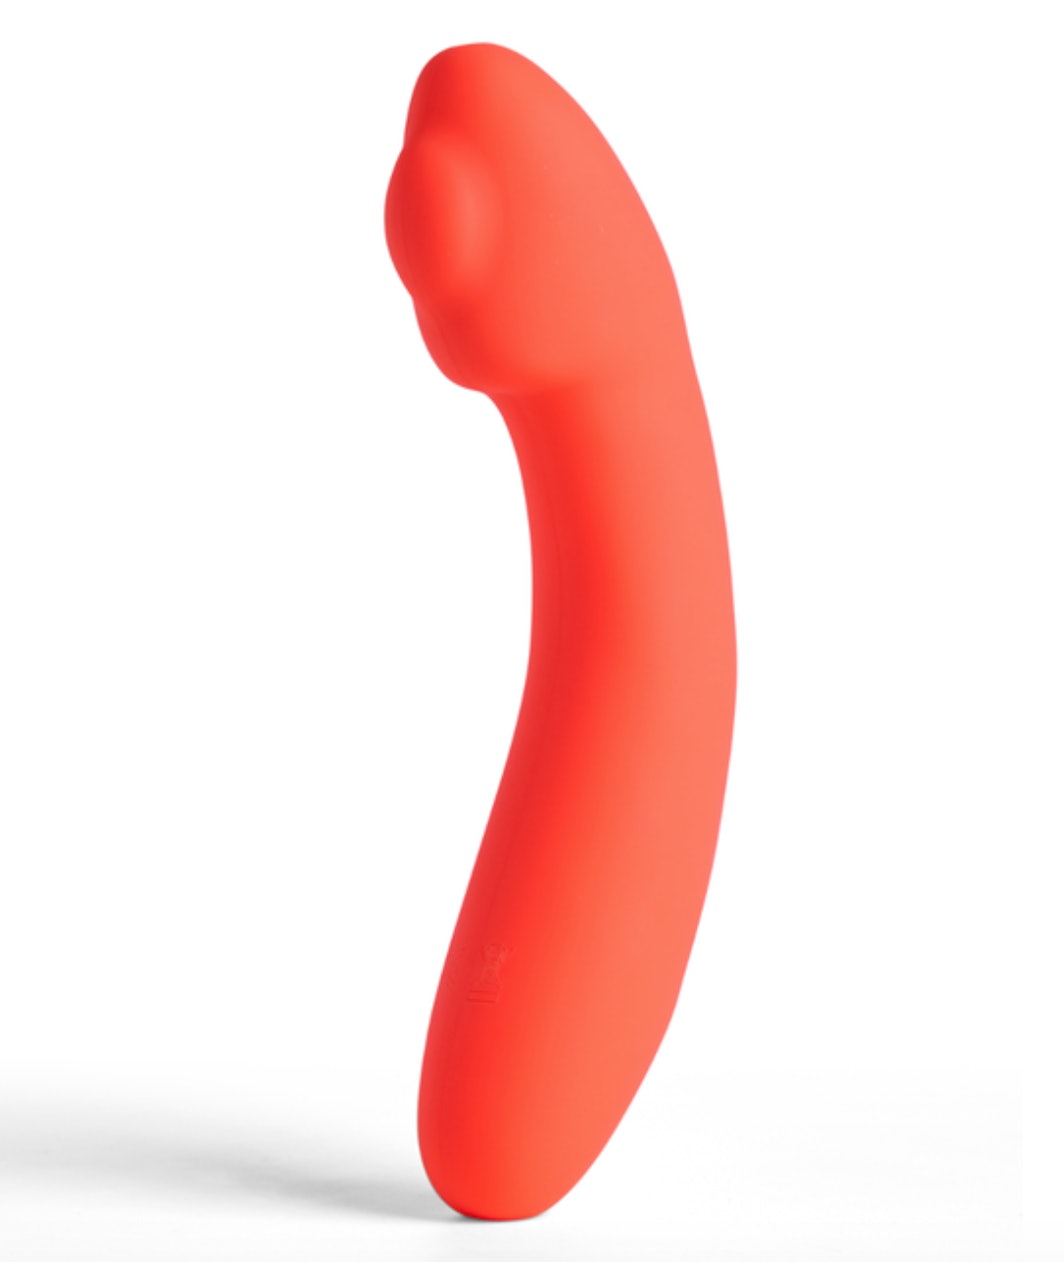 En caso de que no lo supiera, existen juguetes sexuales con calefacción